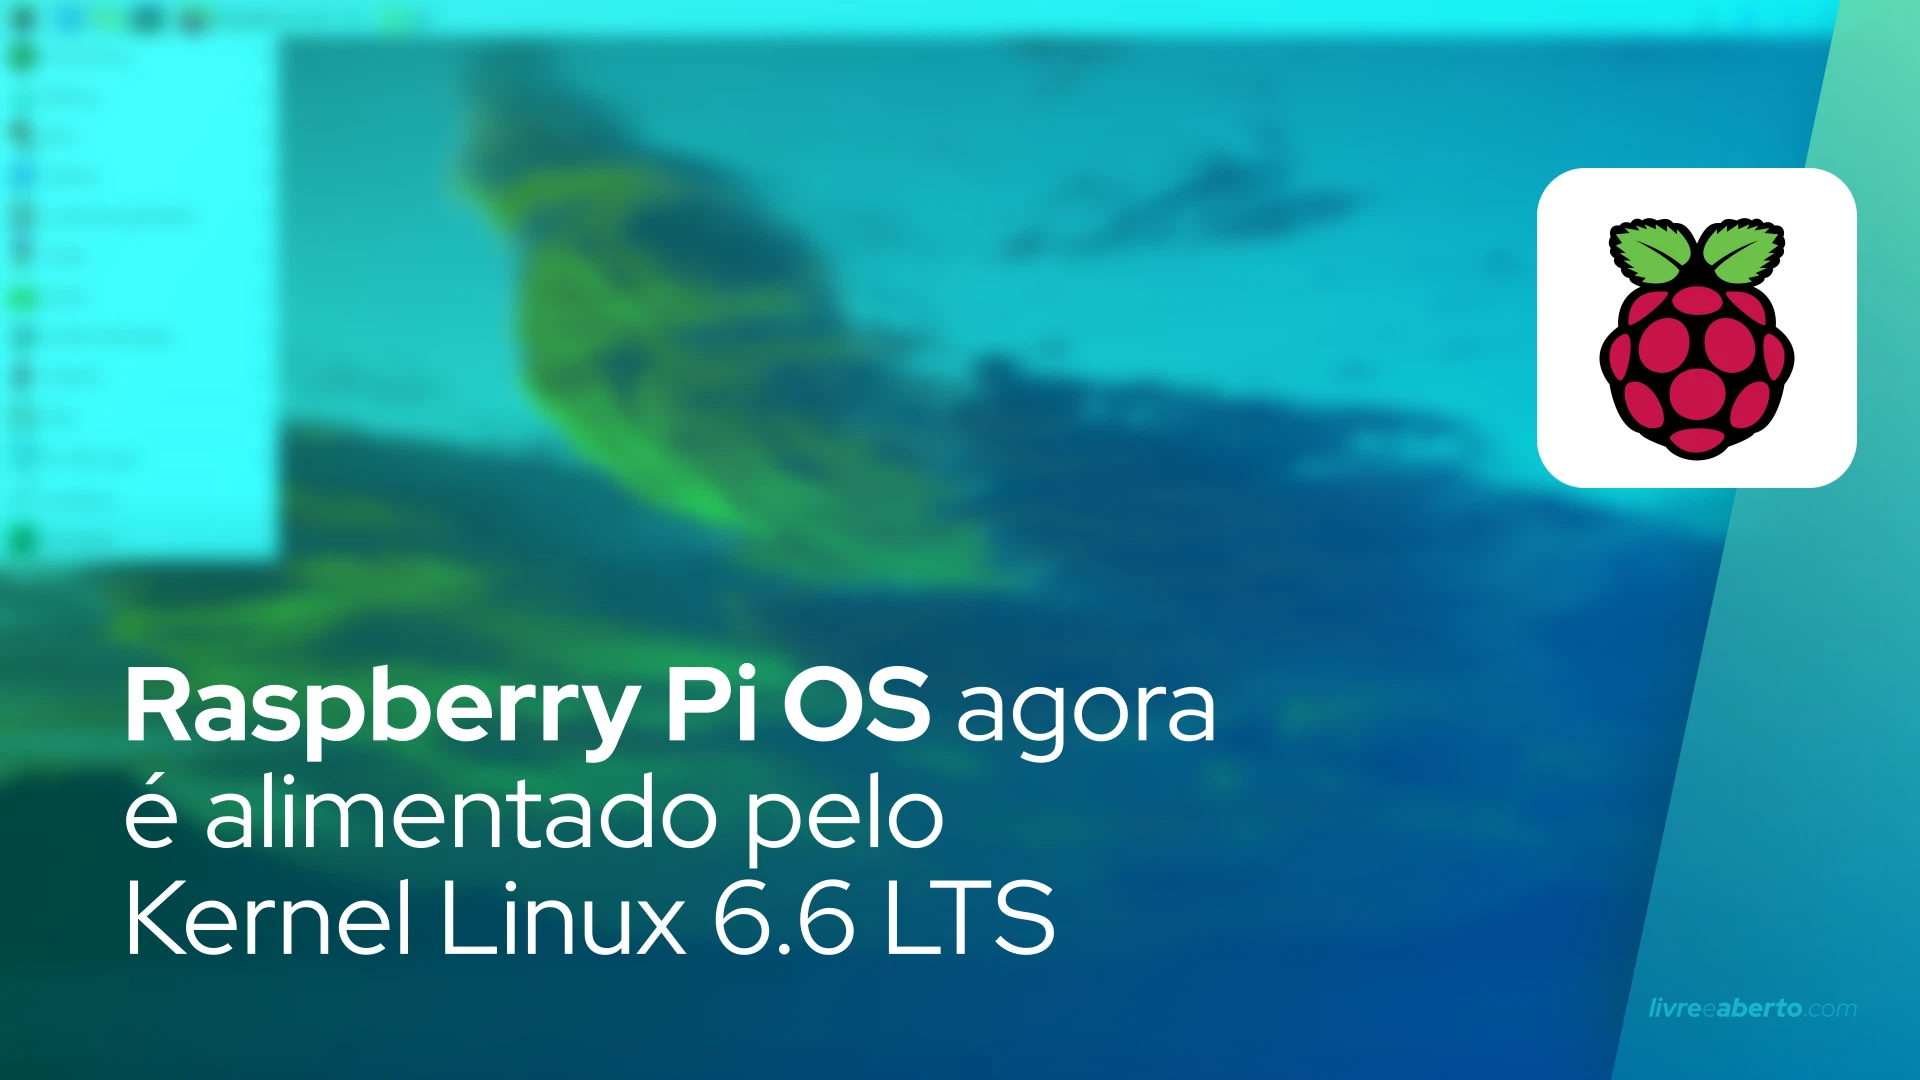 Raspberry Pi OS agora é alimentado pelo Kernel Linux 6.6 LTS, melhora o suporte ao Raspberry Pi 5